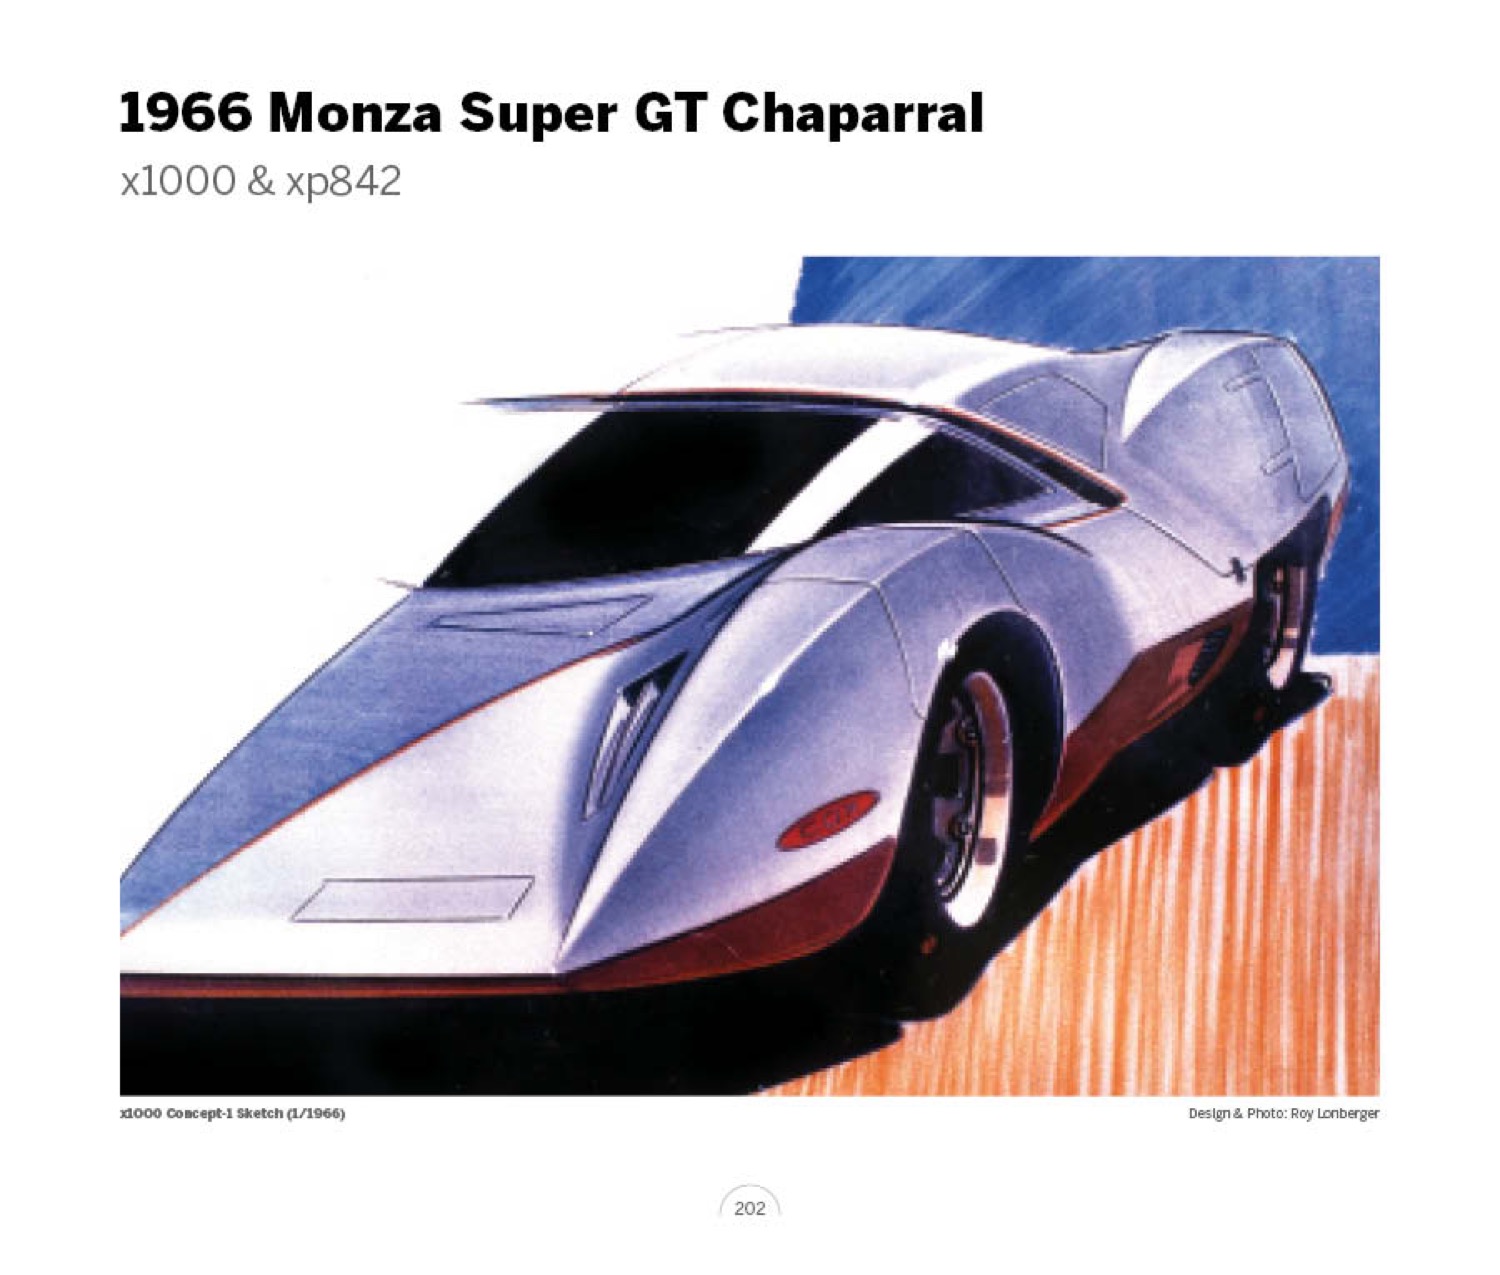 (29) 1966 Monza Super GT Chaparral x1000 LoRez.jpg